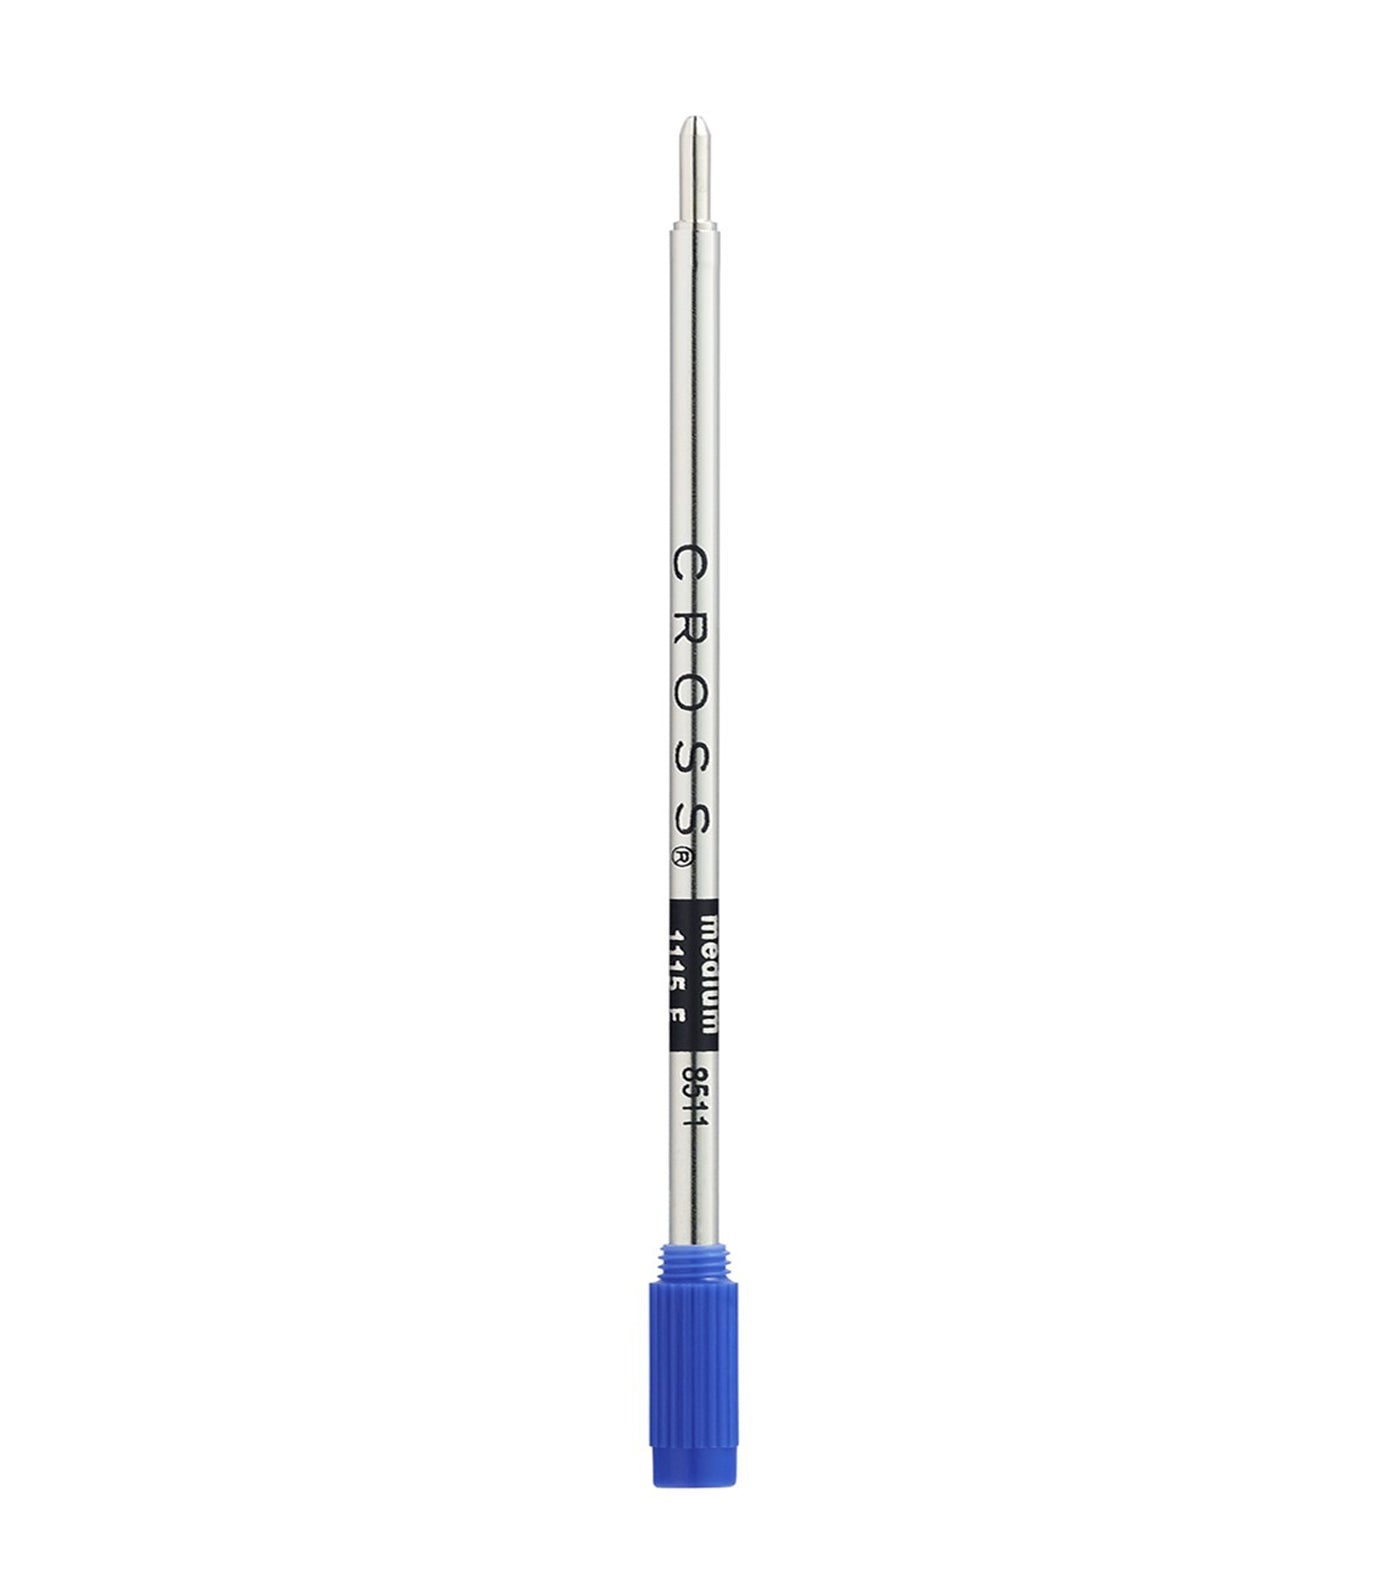 Blue Medium Ballpoint Pen Refill